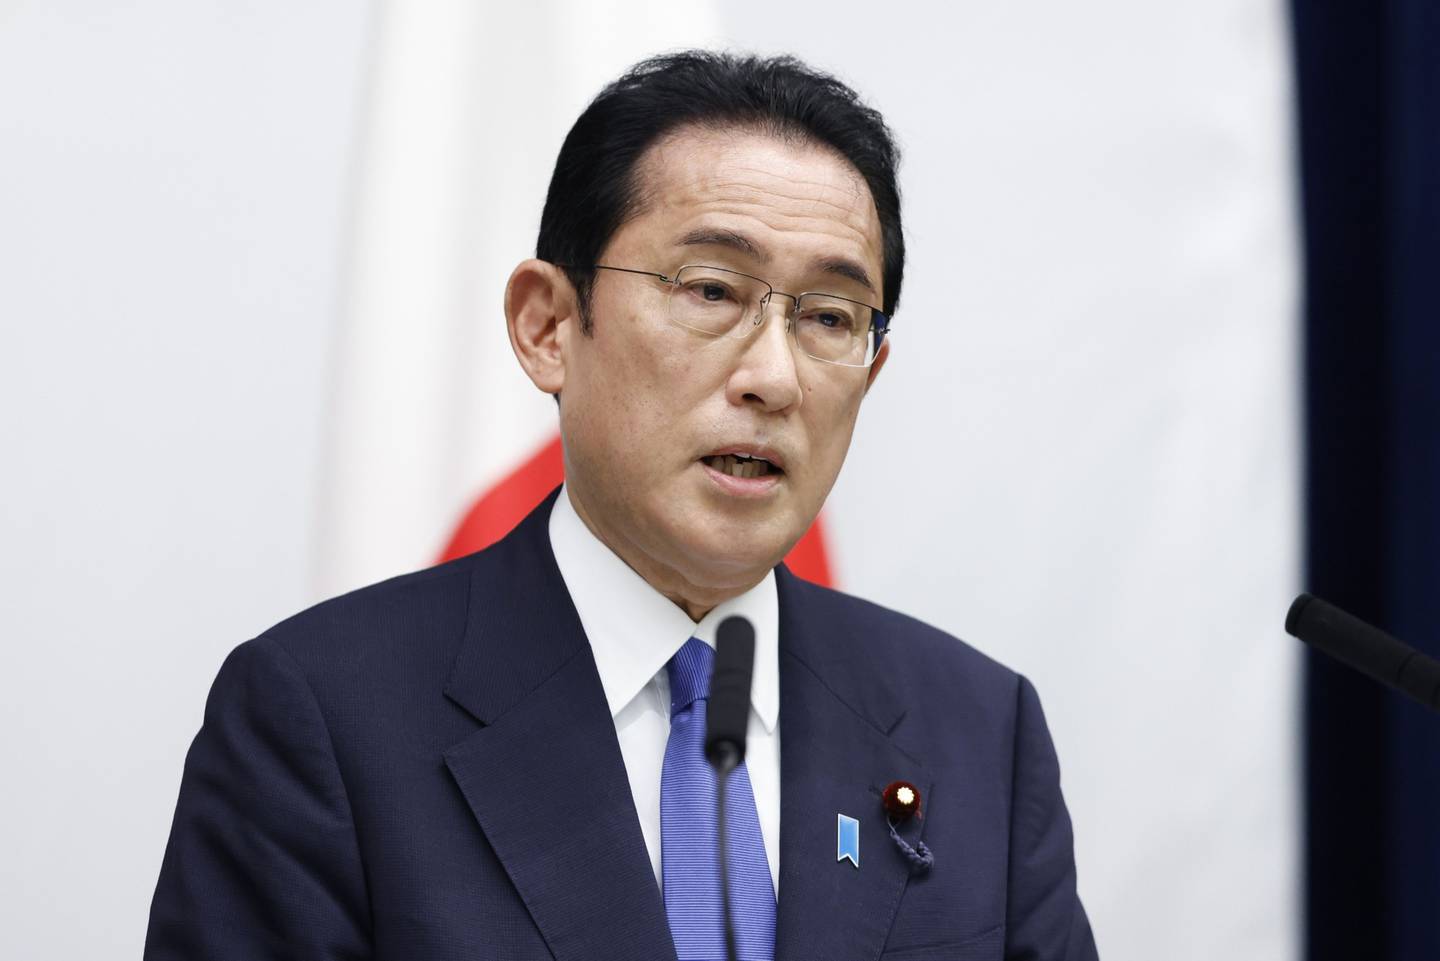 Fumio Kishida, primer ministro de Japón, habla durante una conferencia de prensa tras la reunión de líderes del Diálogo Cuadrilateral de Seguridad (Quad) en la residencia oficial del primer ministro en Tokio, Japón, el martes 24 de mayo de 2022.